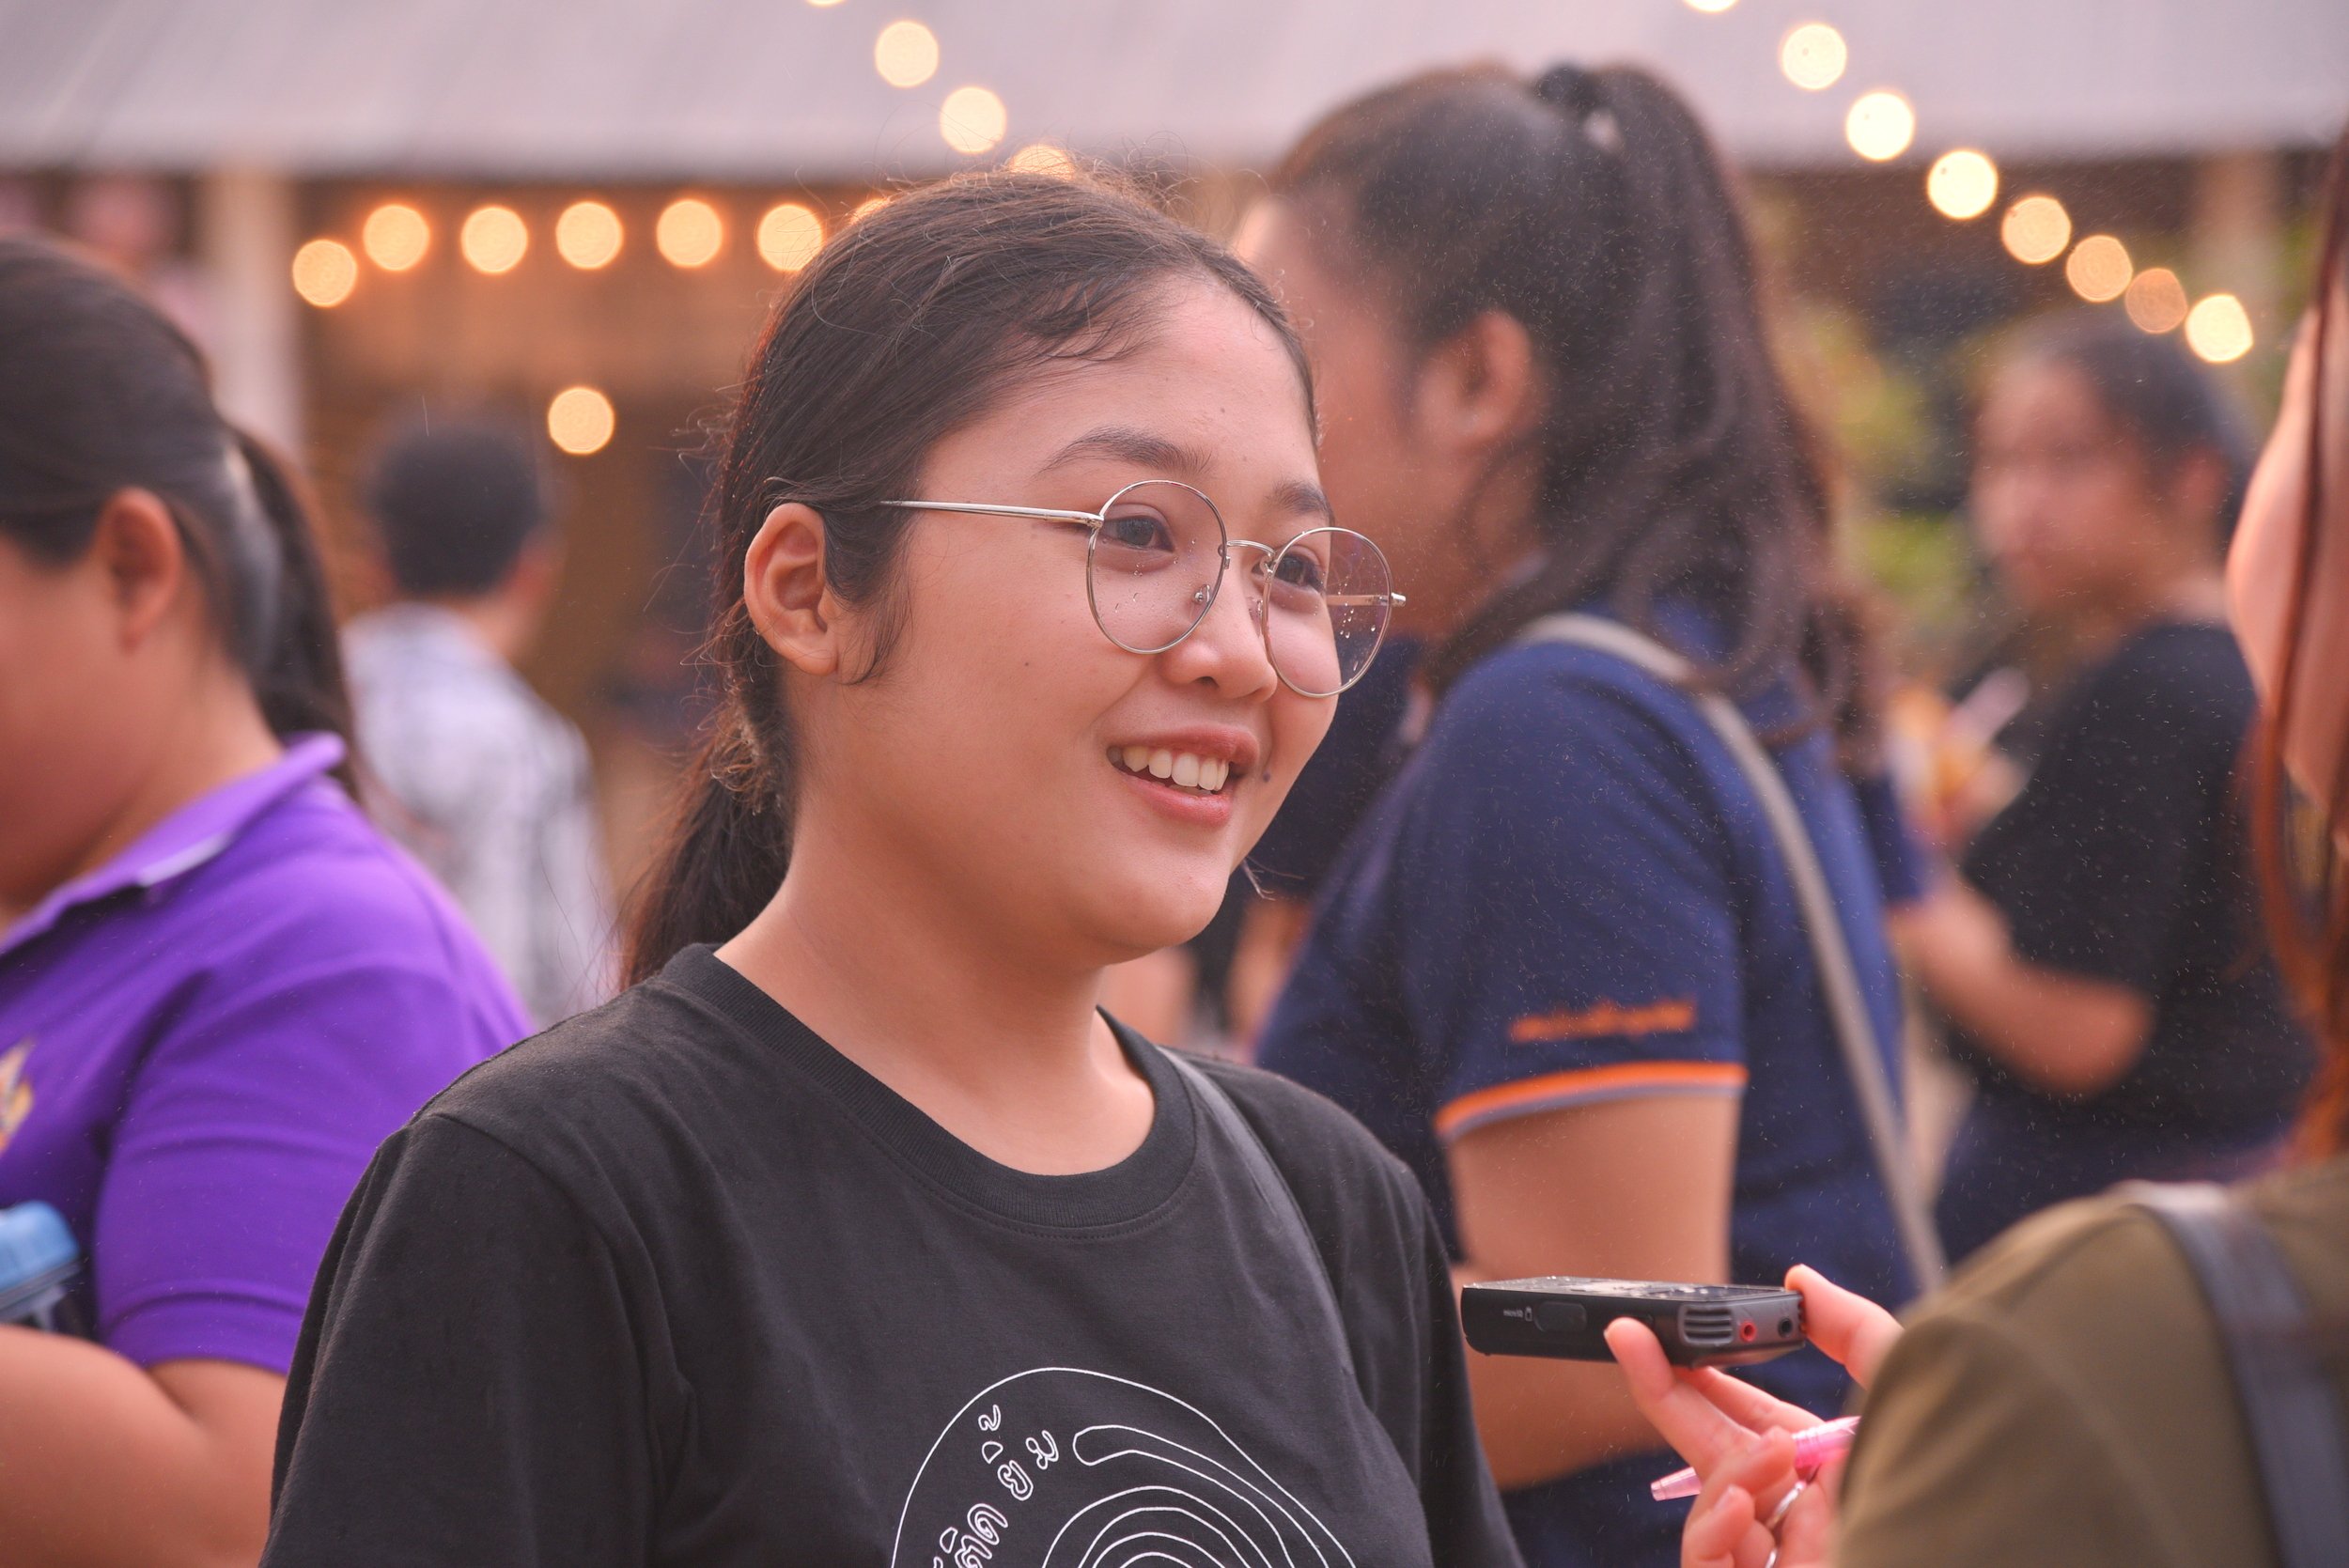 'อุตรดิตถ์ติดยิ้ม' ปี62 ปลุกการเรียนรู้สู่คนทุกวัย thaihealth